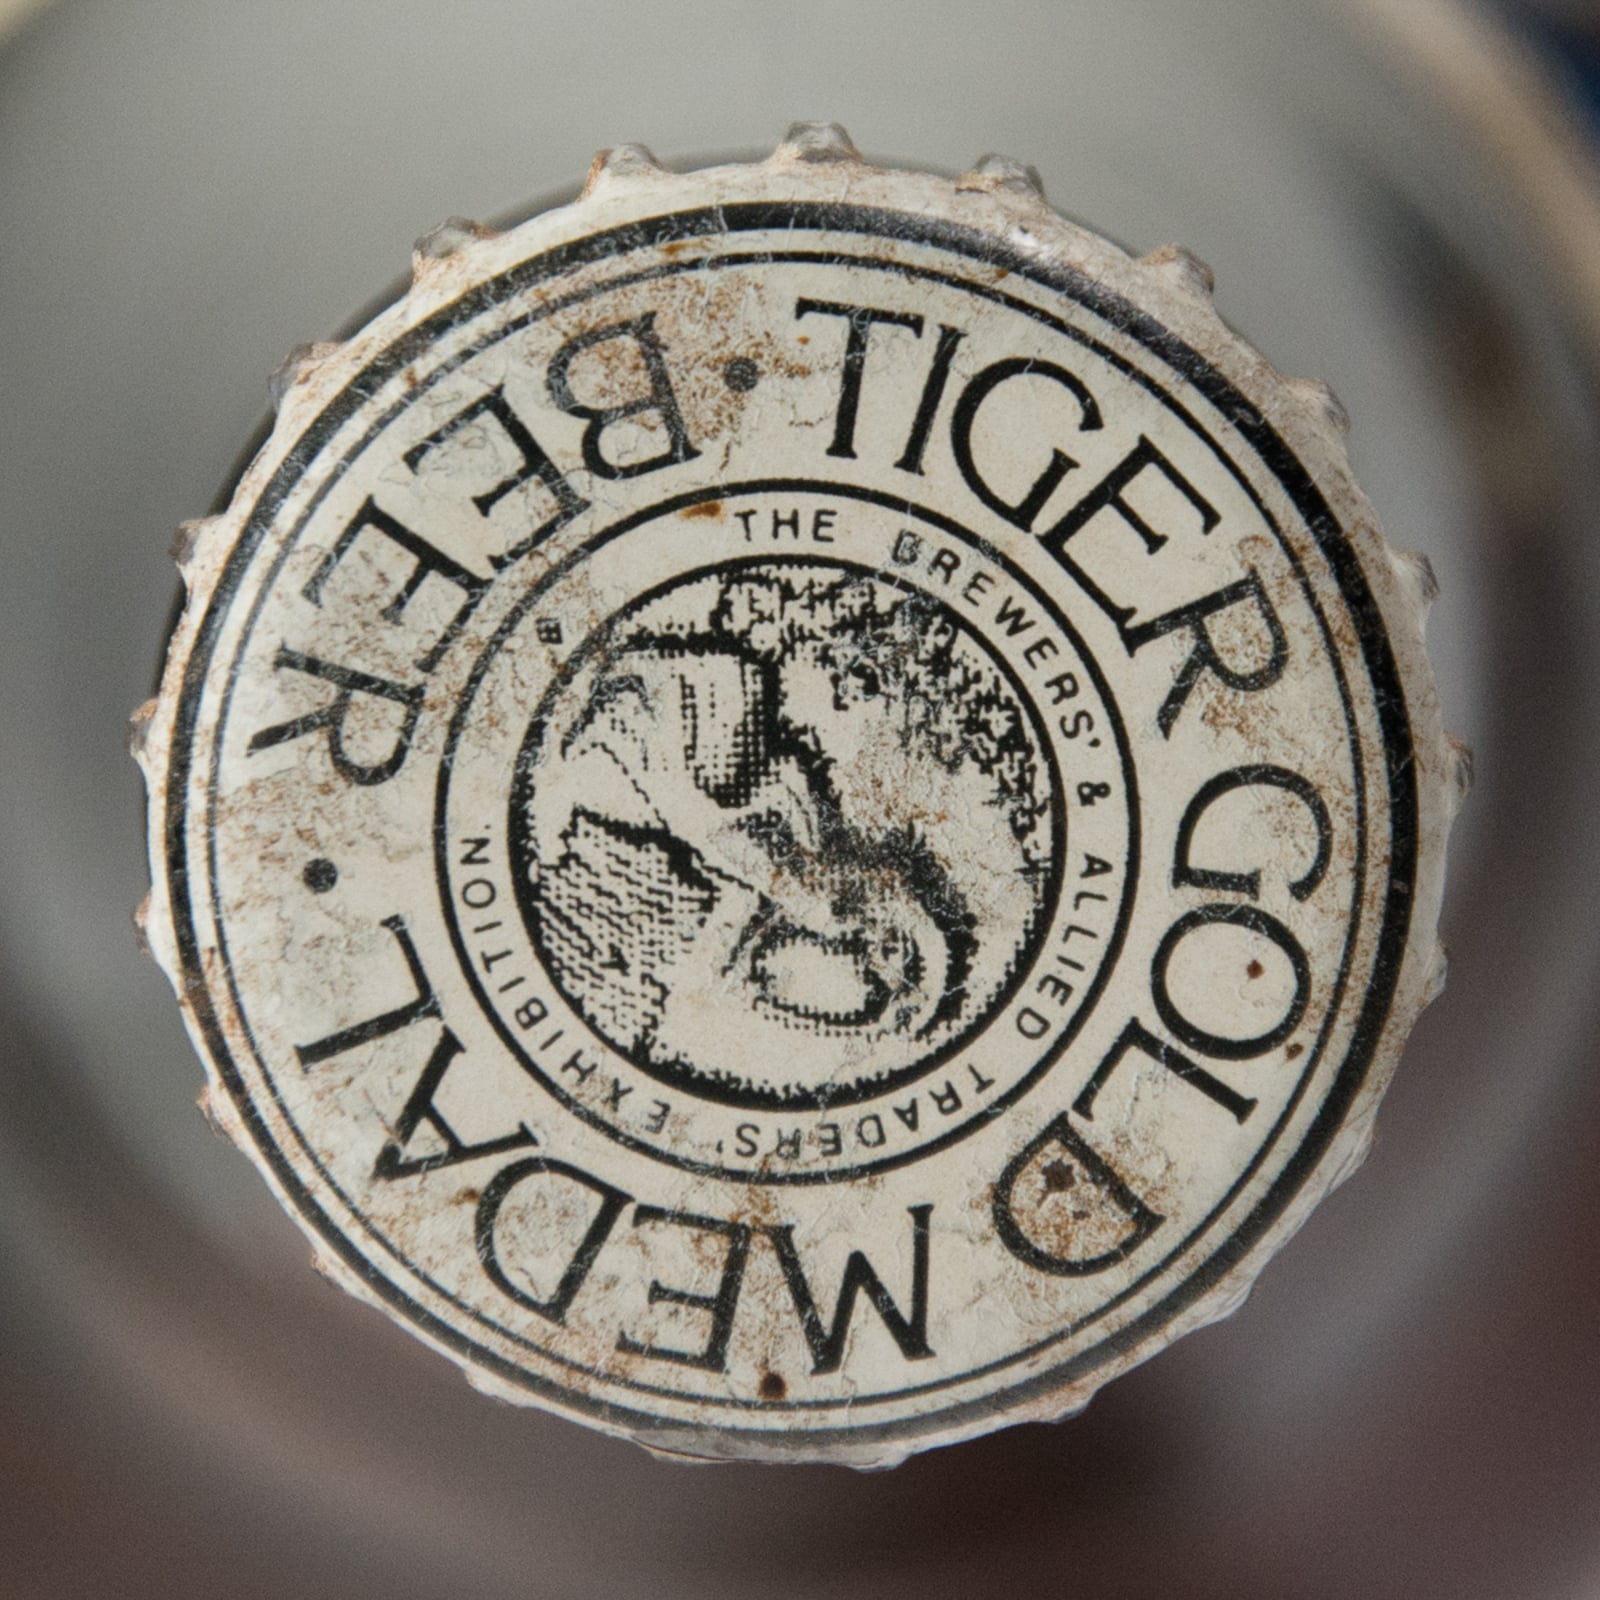 Tiger Lager Beer Vintage Bottle